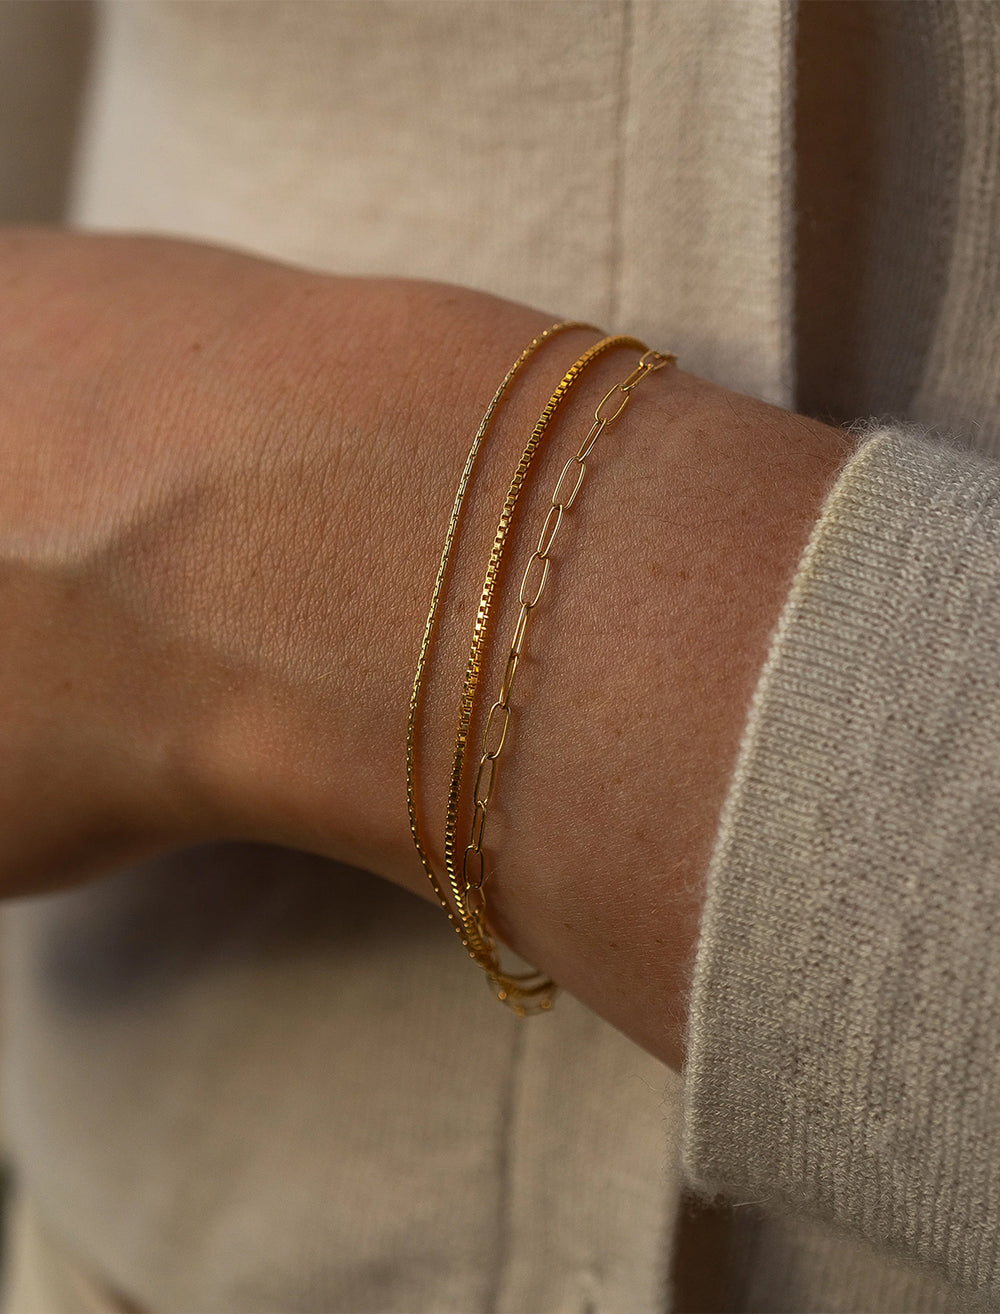 Model wearing THATCH's rosalie bracelet in gold.